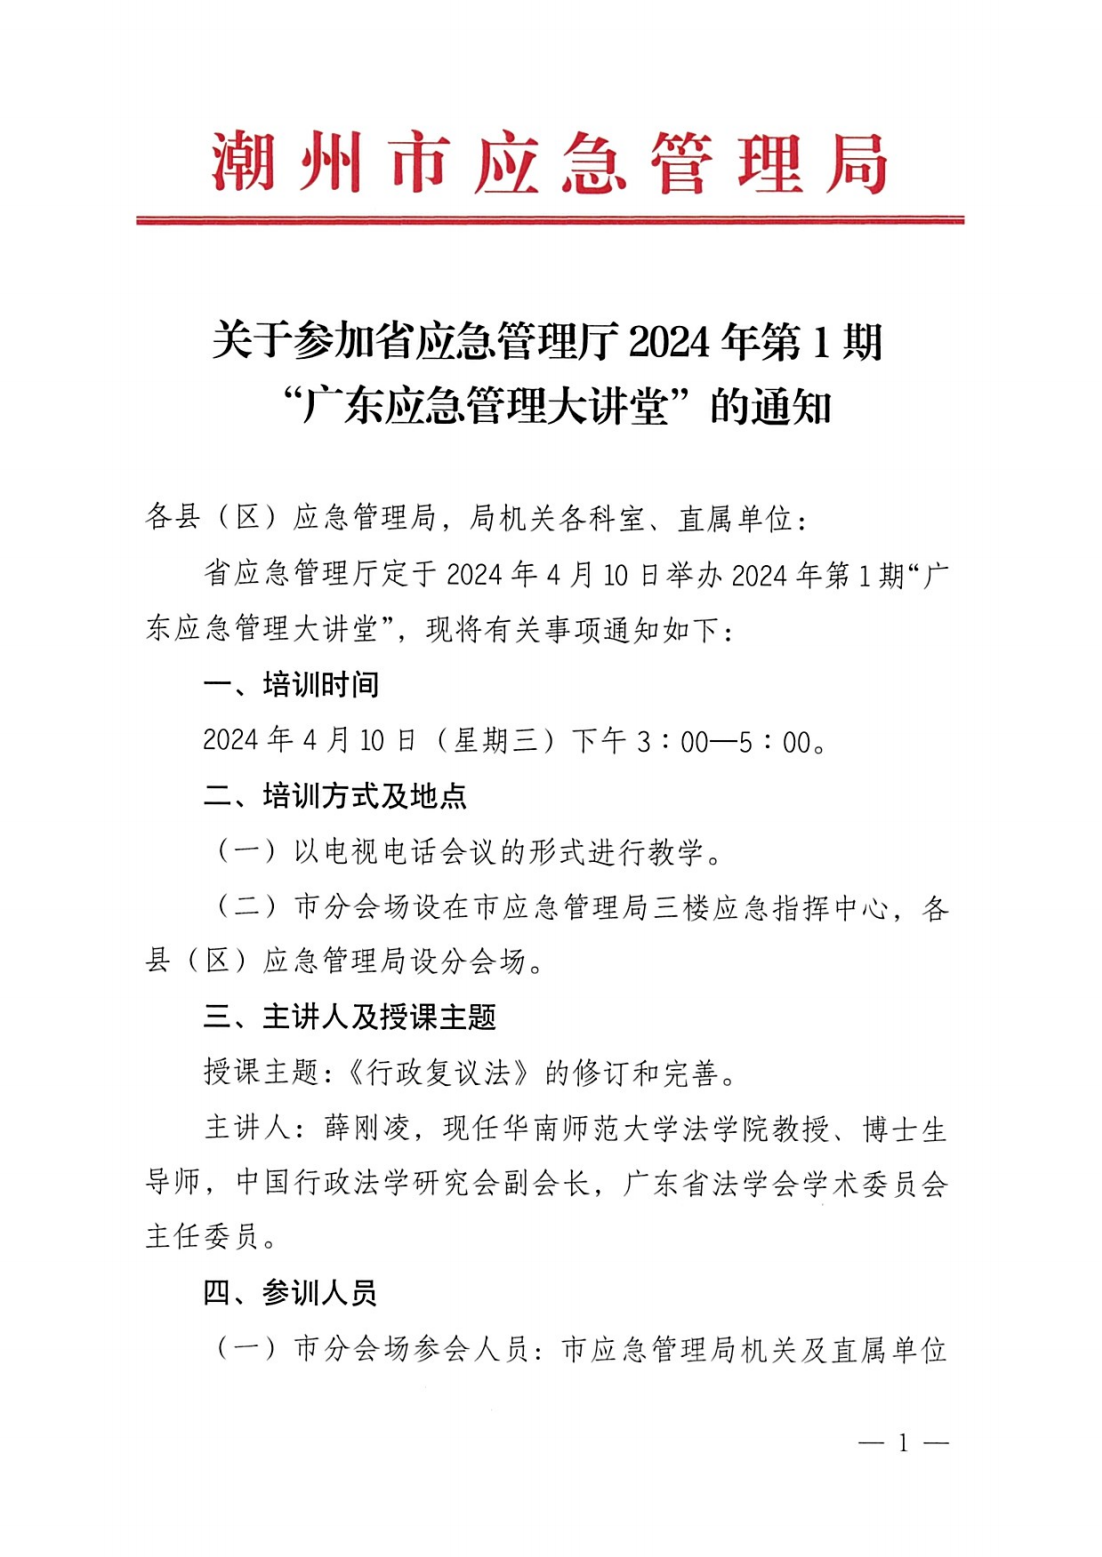 关于参加省应急管理厅2024年第1期“广东应急管理大讲堂”的通知_00.png